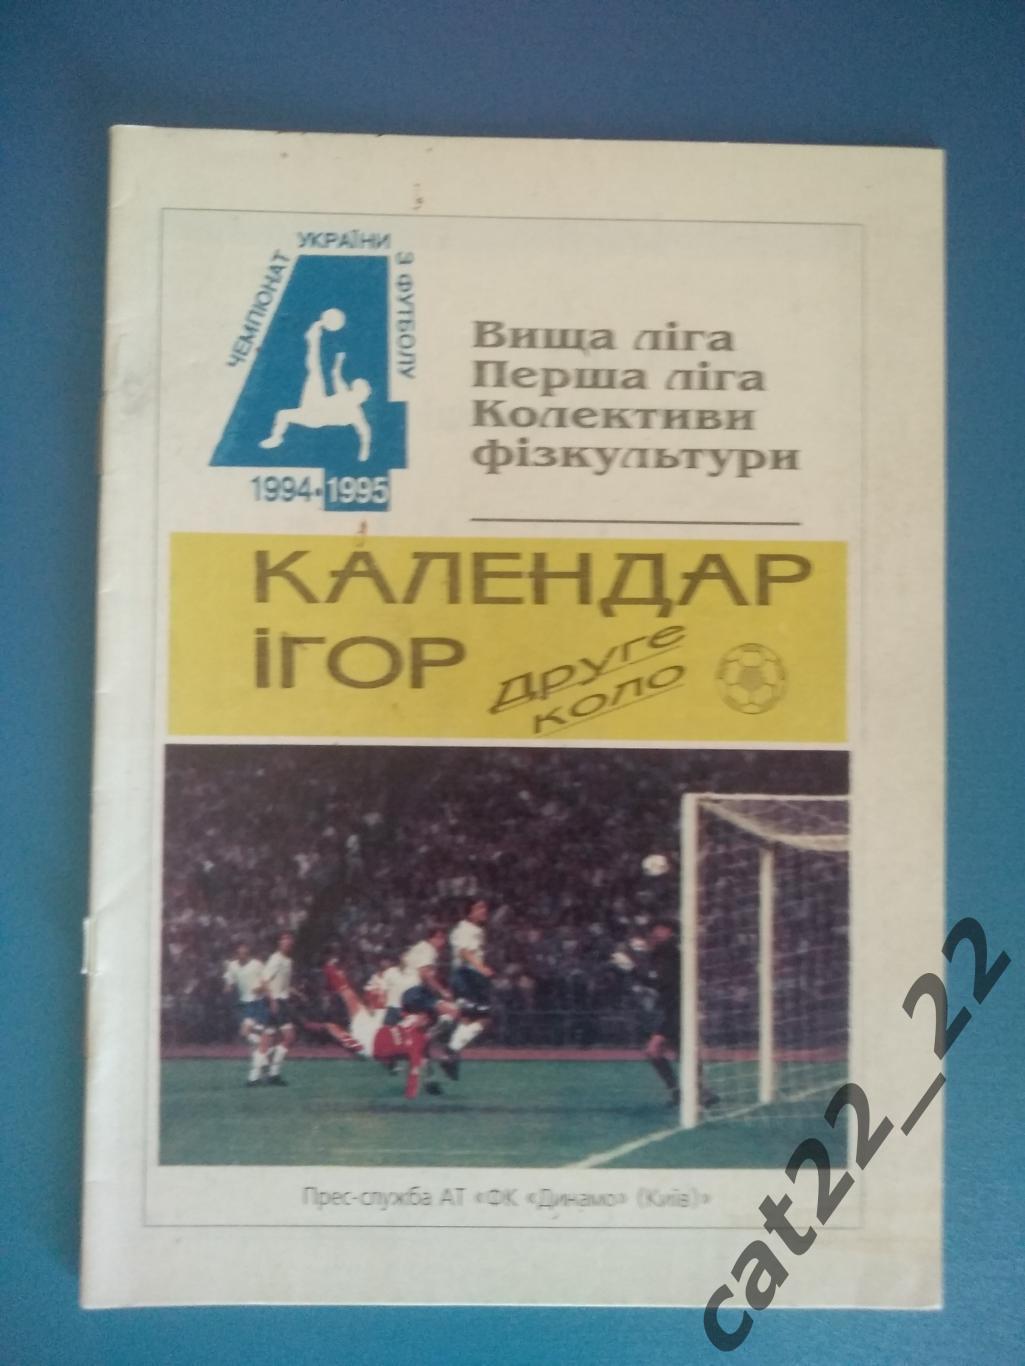 Буклет: Динамо Киев Украина 1994/1995